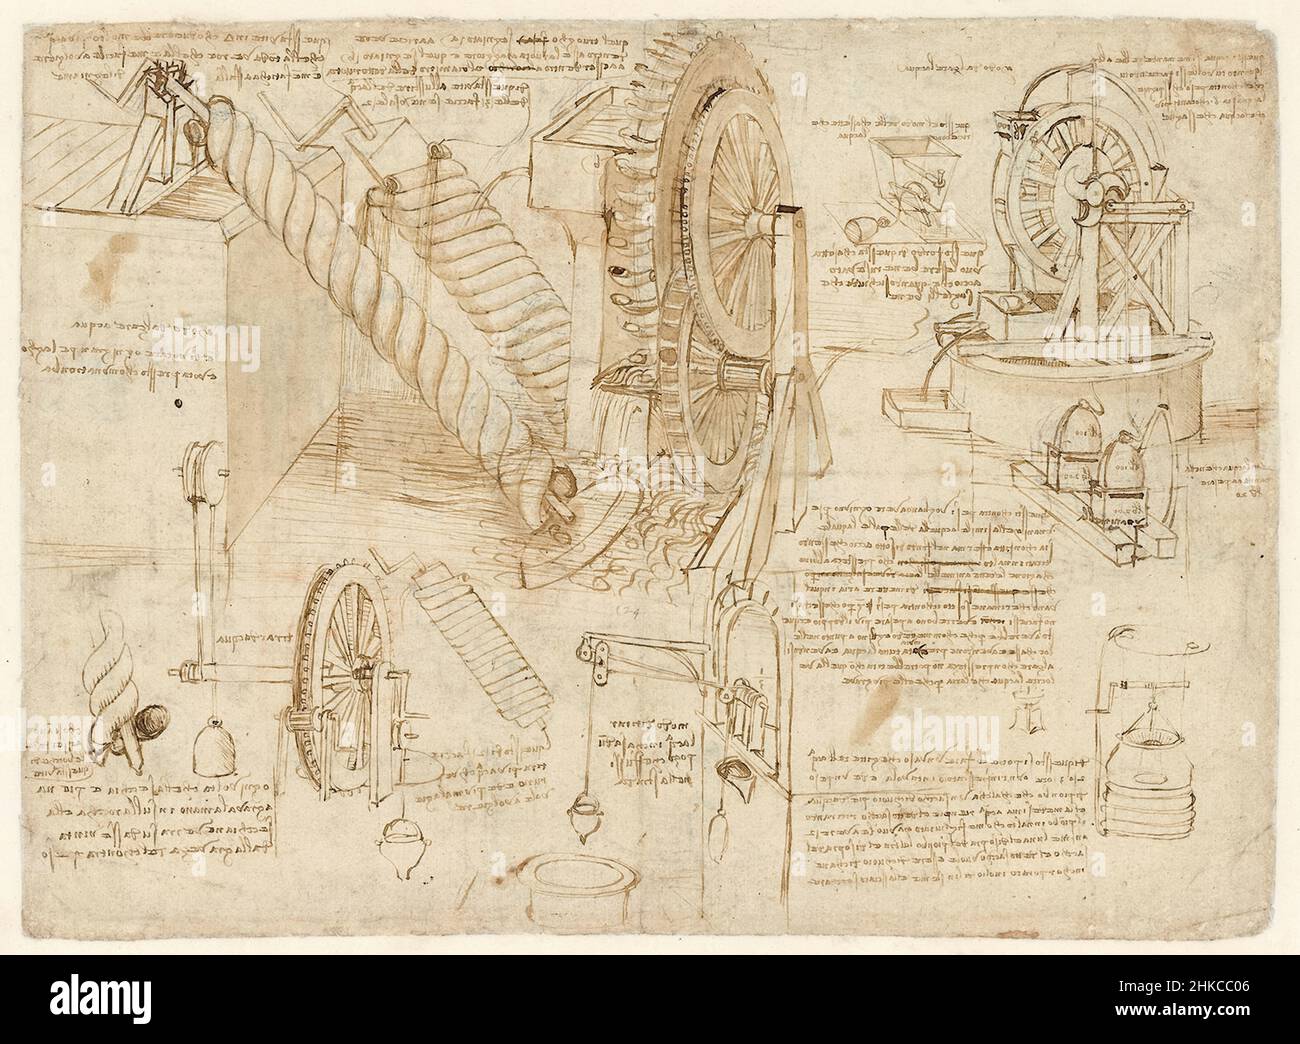 Zeichnungen von Wasserrädern und archimedischen Schrauben, die von Leonardo da Vinci (1452-1519) zur Bewässerung verwendet wurden, enthalten im Codex Atlanticus einen gebundenen Satz von über 1000 Seiten aus den Jahren 1478 bis 1519. Stockfoto